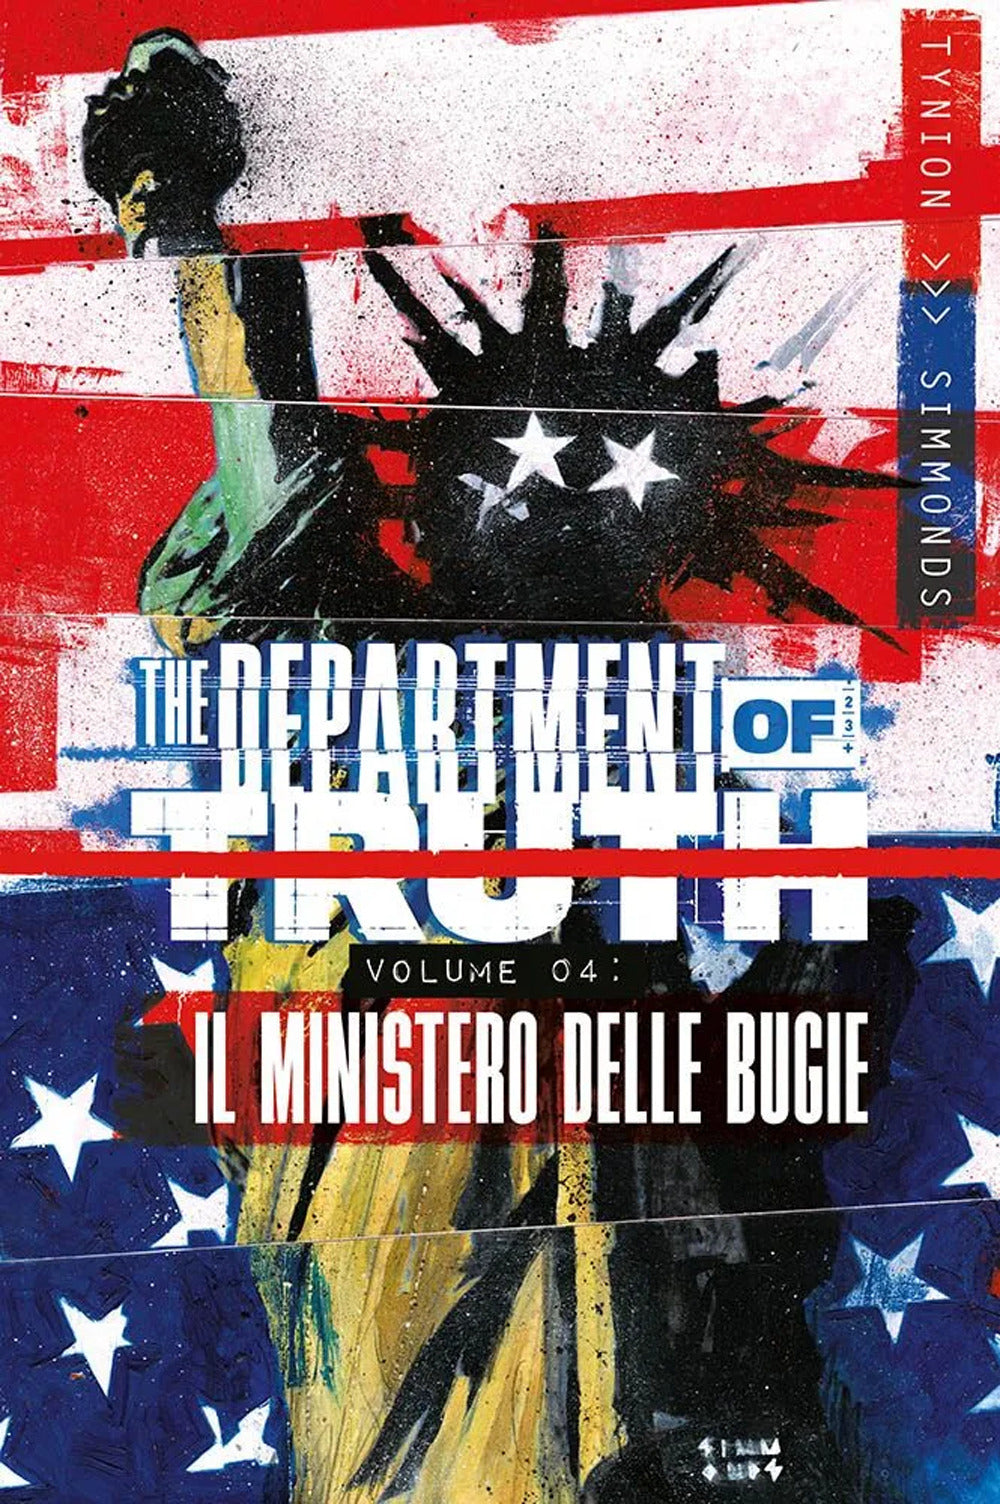 Department of truth. Vol. 4: Il ministero delle bugie